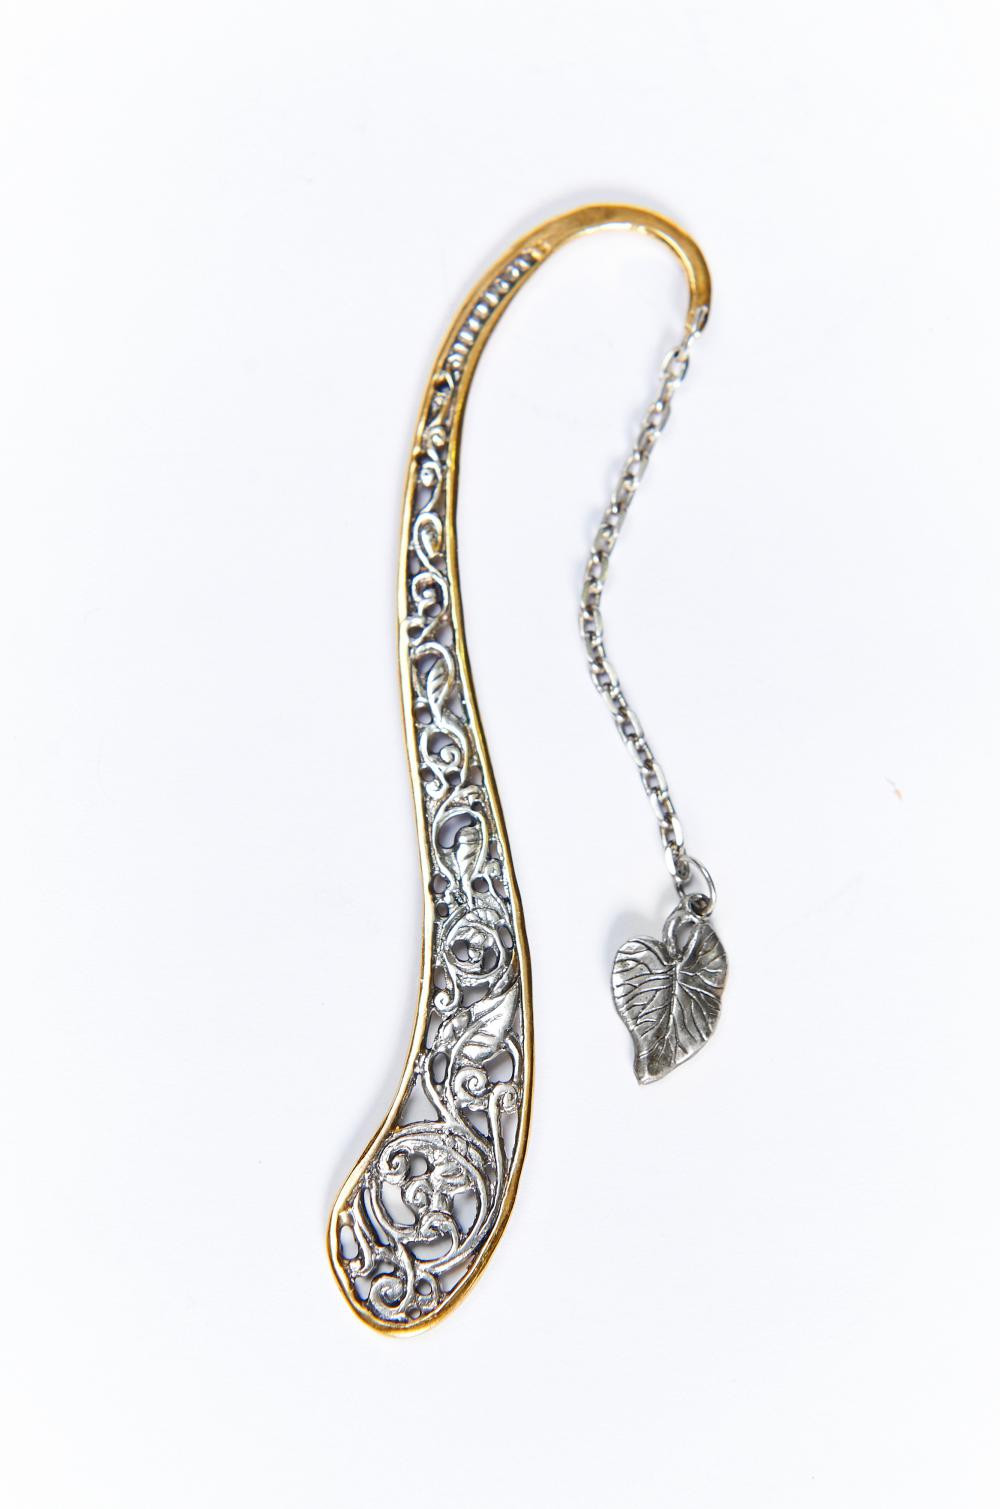 Серебряная закладка для книги (арт. 1390) цена - 0 грн, фото - купить винтернет-магазине Золотая Королева